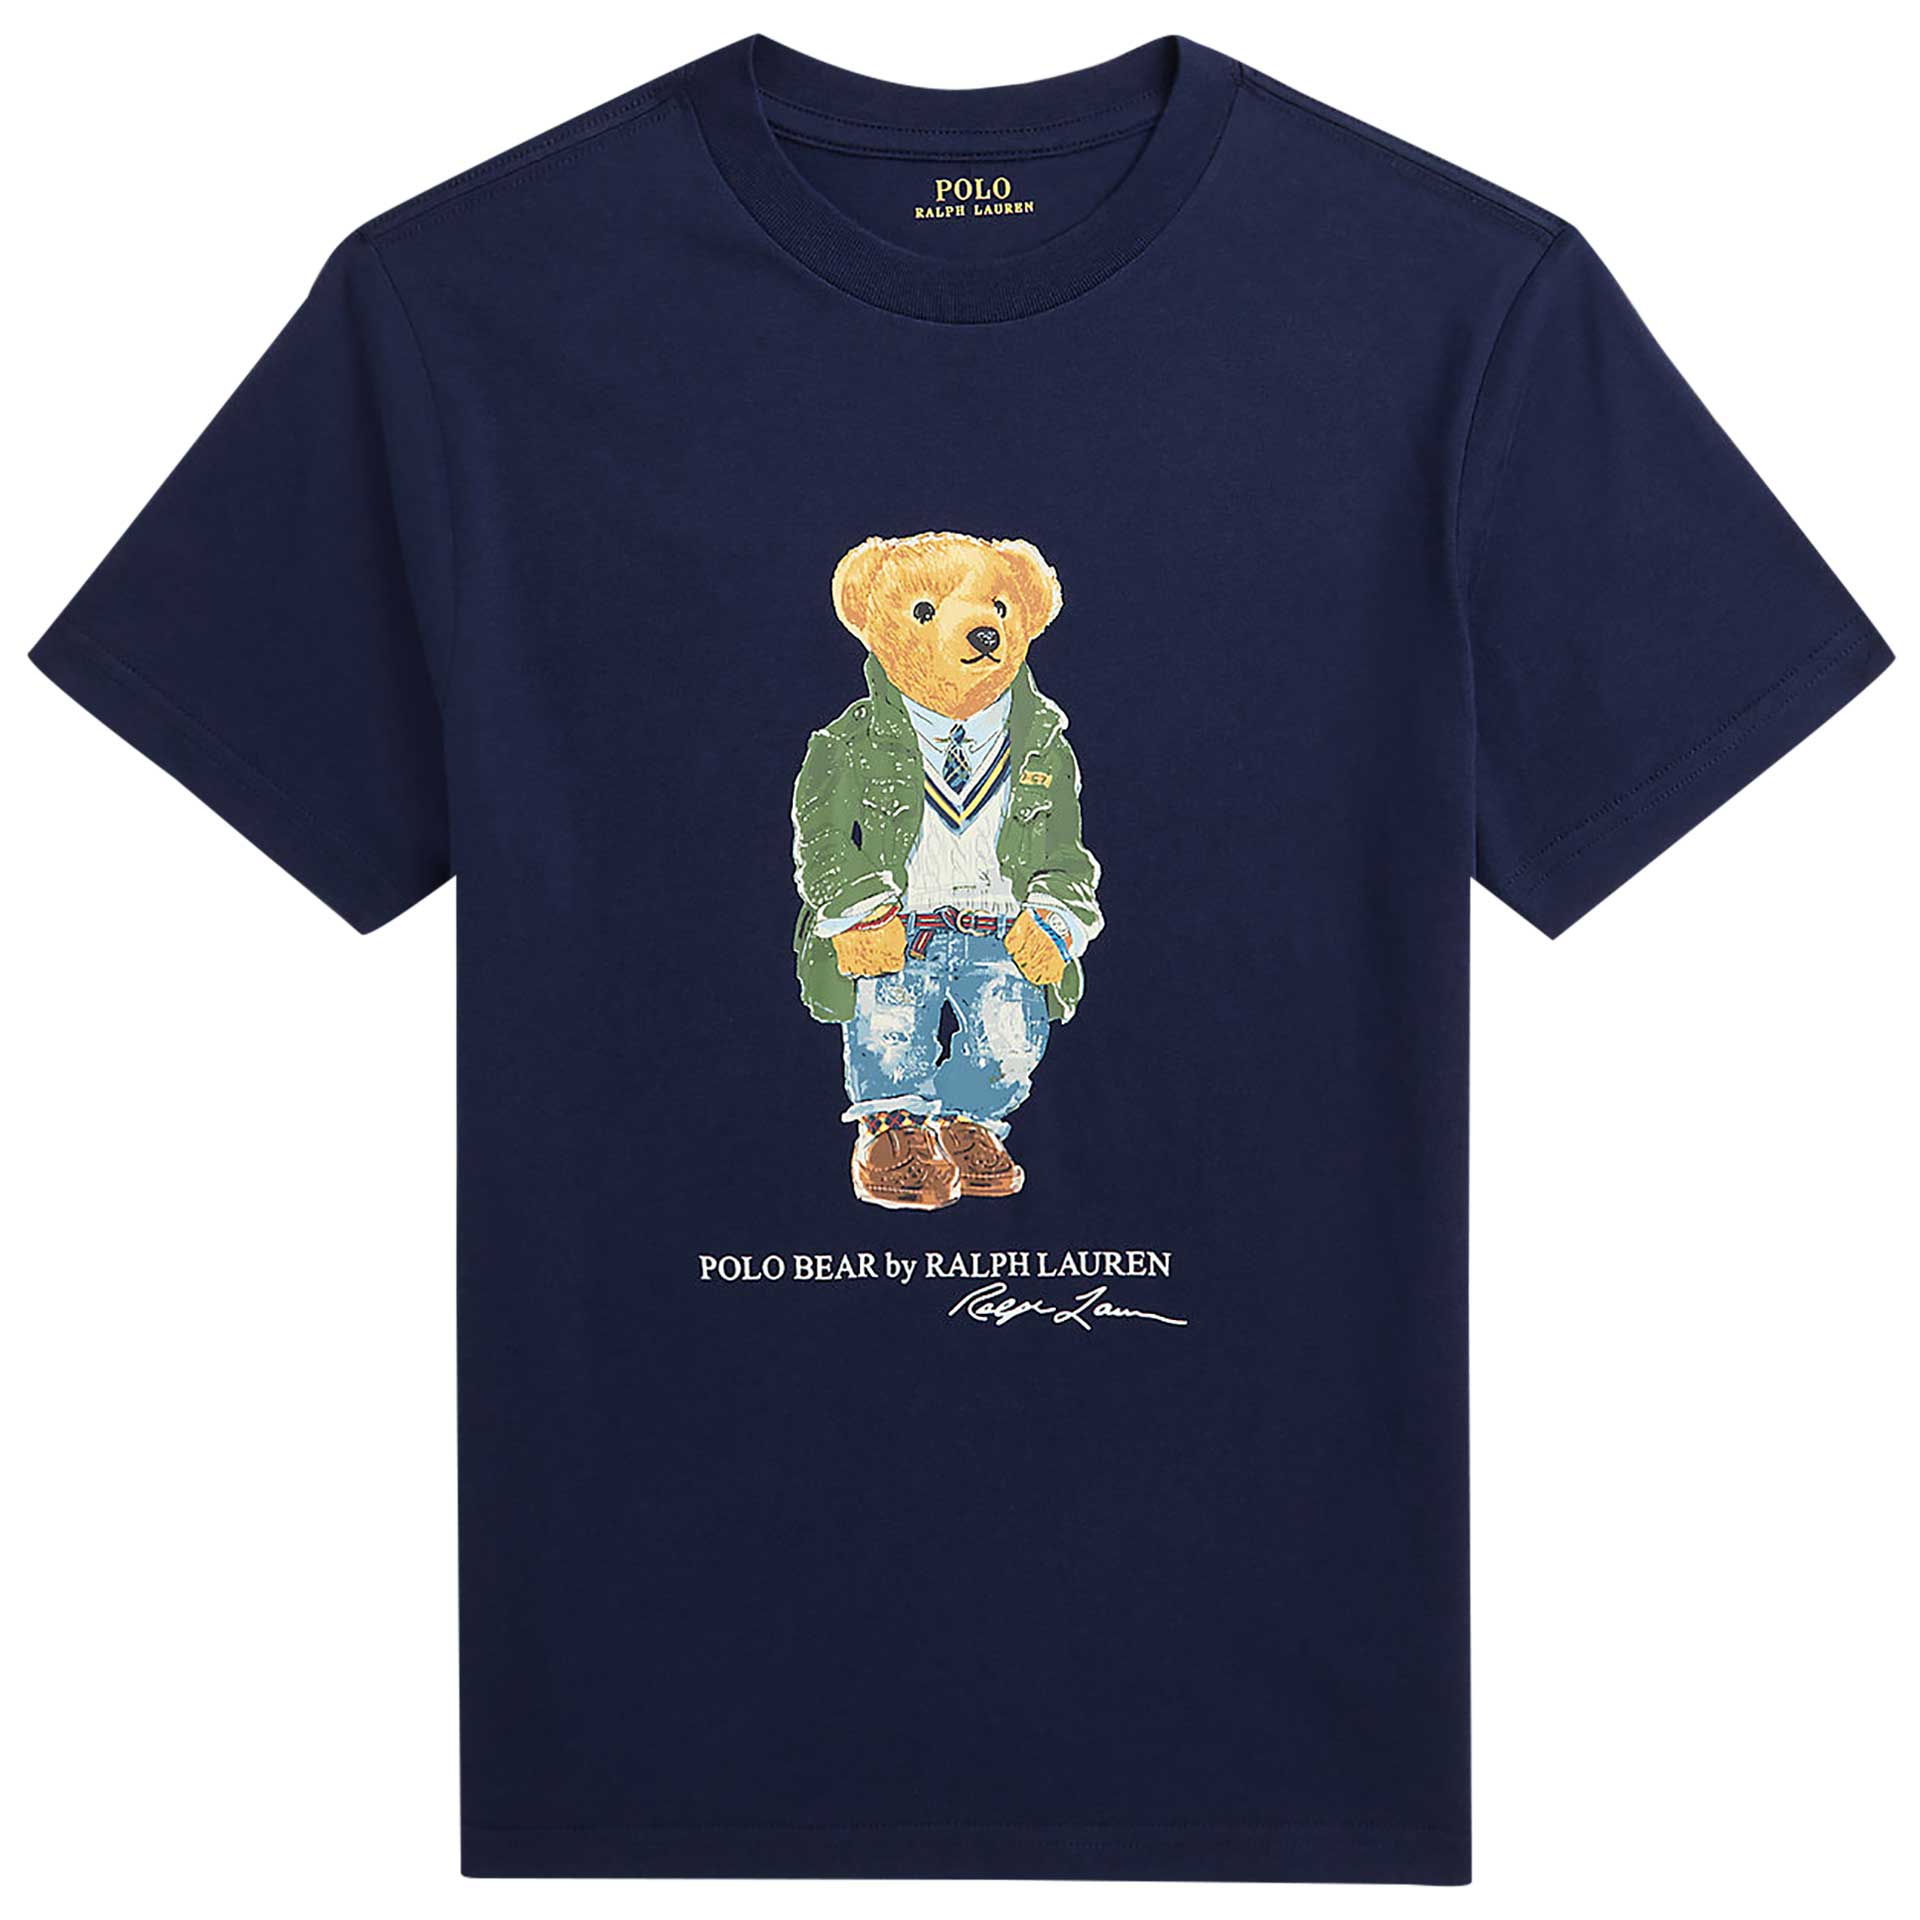 Polo Ralph Lauren T-shirt 1